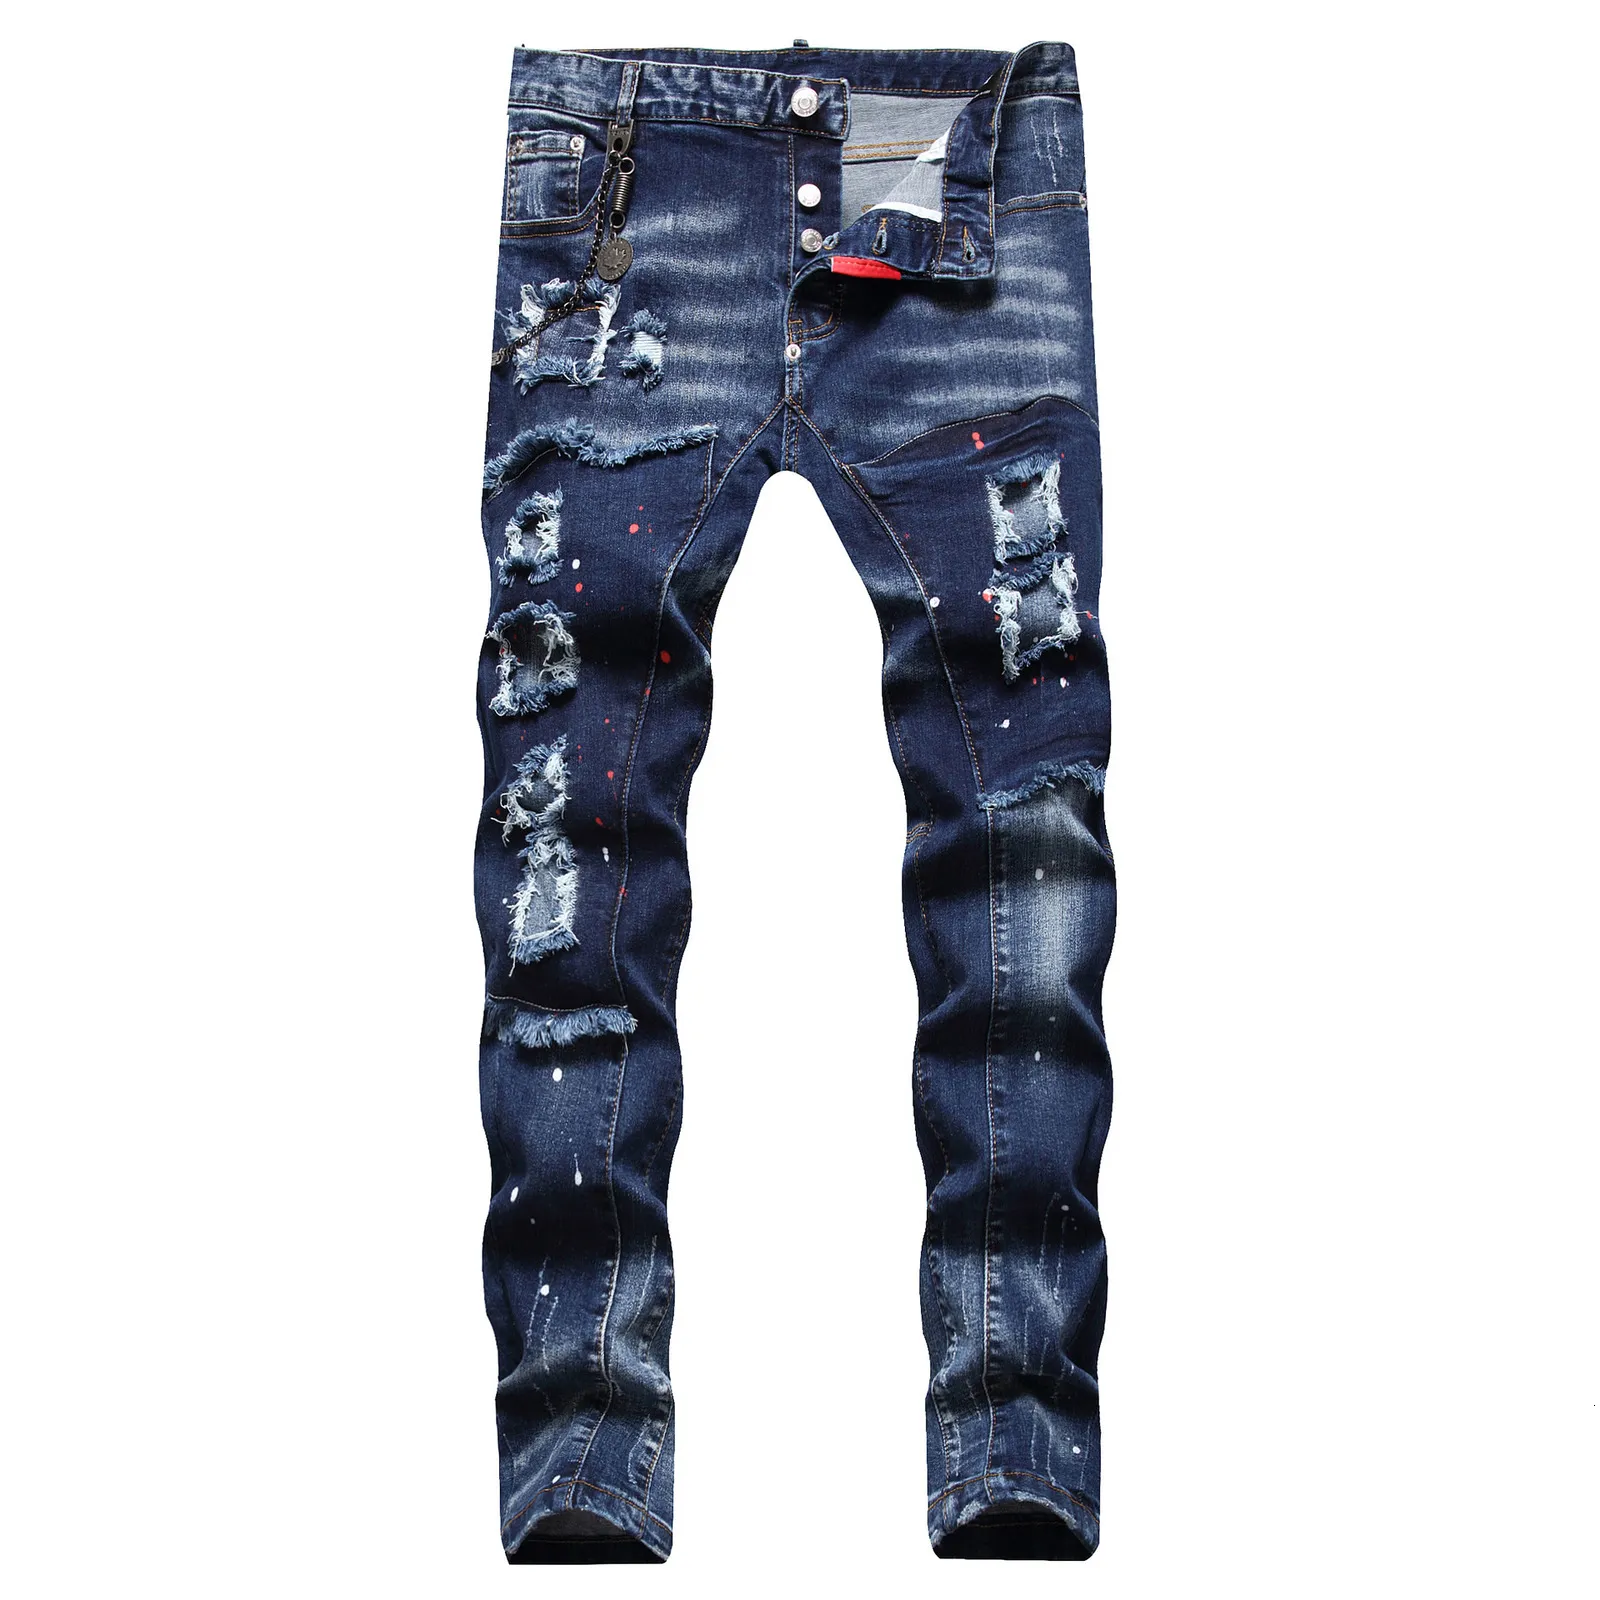 Jeans Masculino Masculino Jeans Skinny Jeans Buracos Estilo Italiano Calças Jeans Stretch Calças Masculinas de Alta Qualidade Tamanho 42 230620